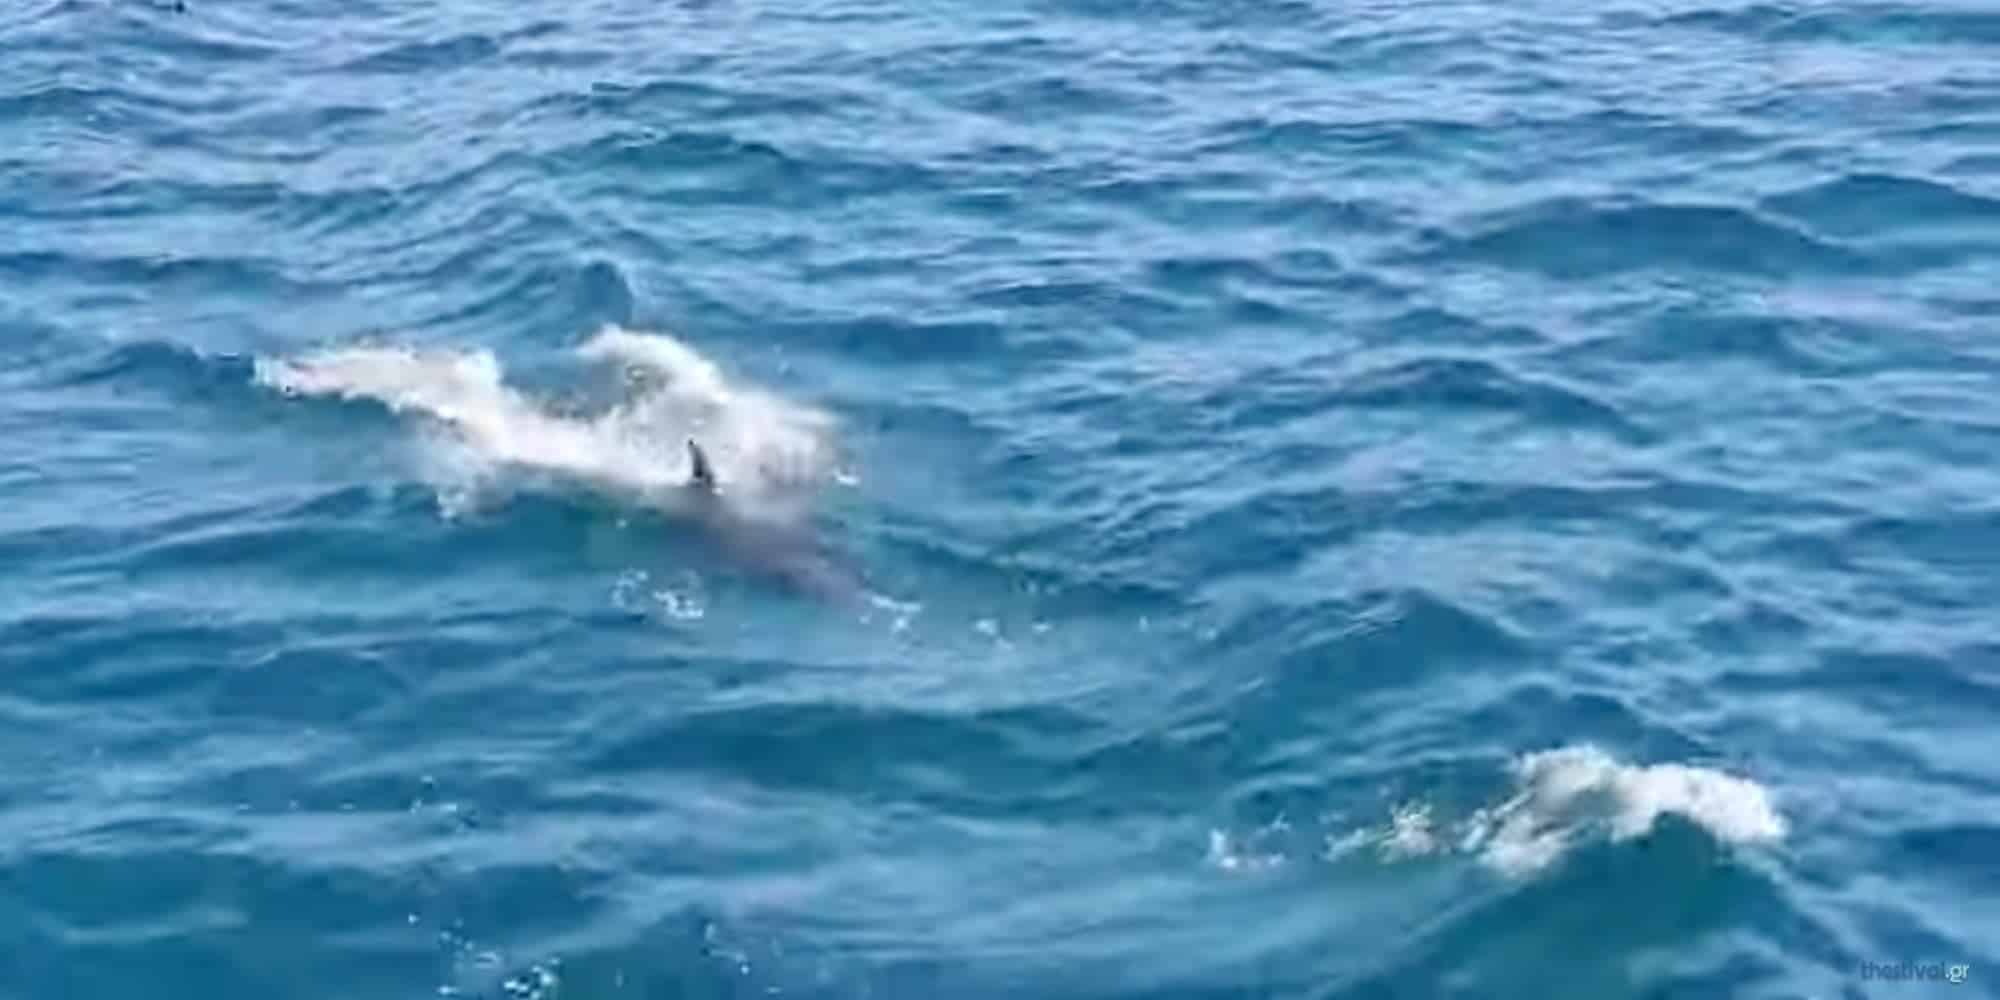 Δελφίνια ακολούθησαν το καραβάκι «Κωνσταντής» στον Θερμαϊκό στη Θεσσαλονίκη